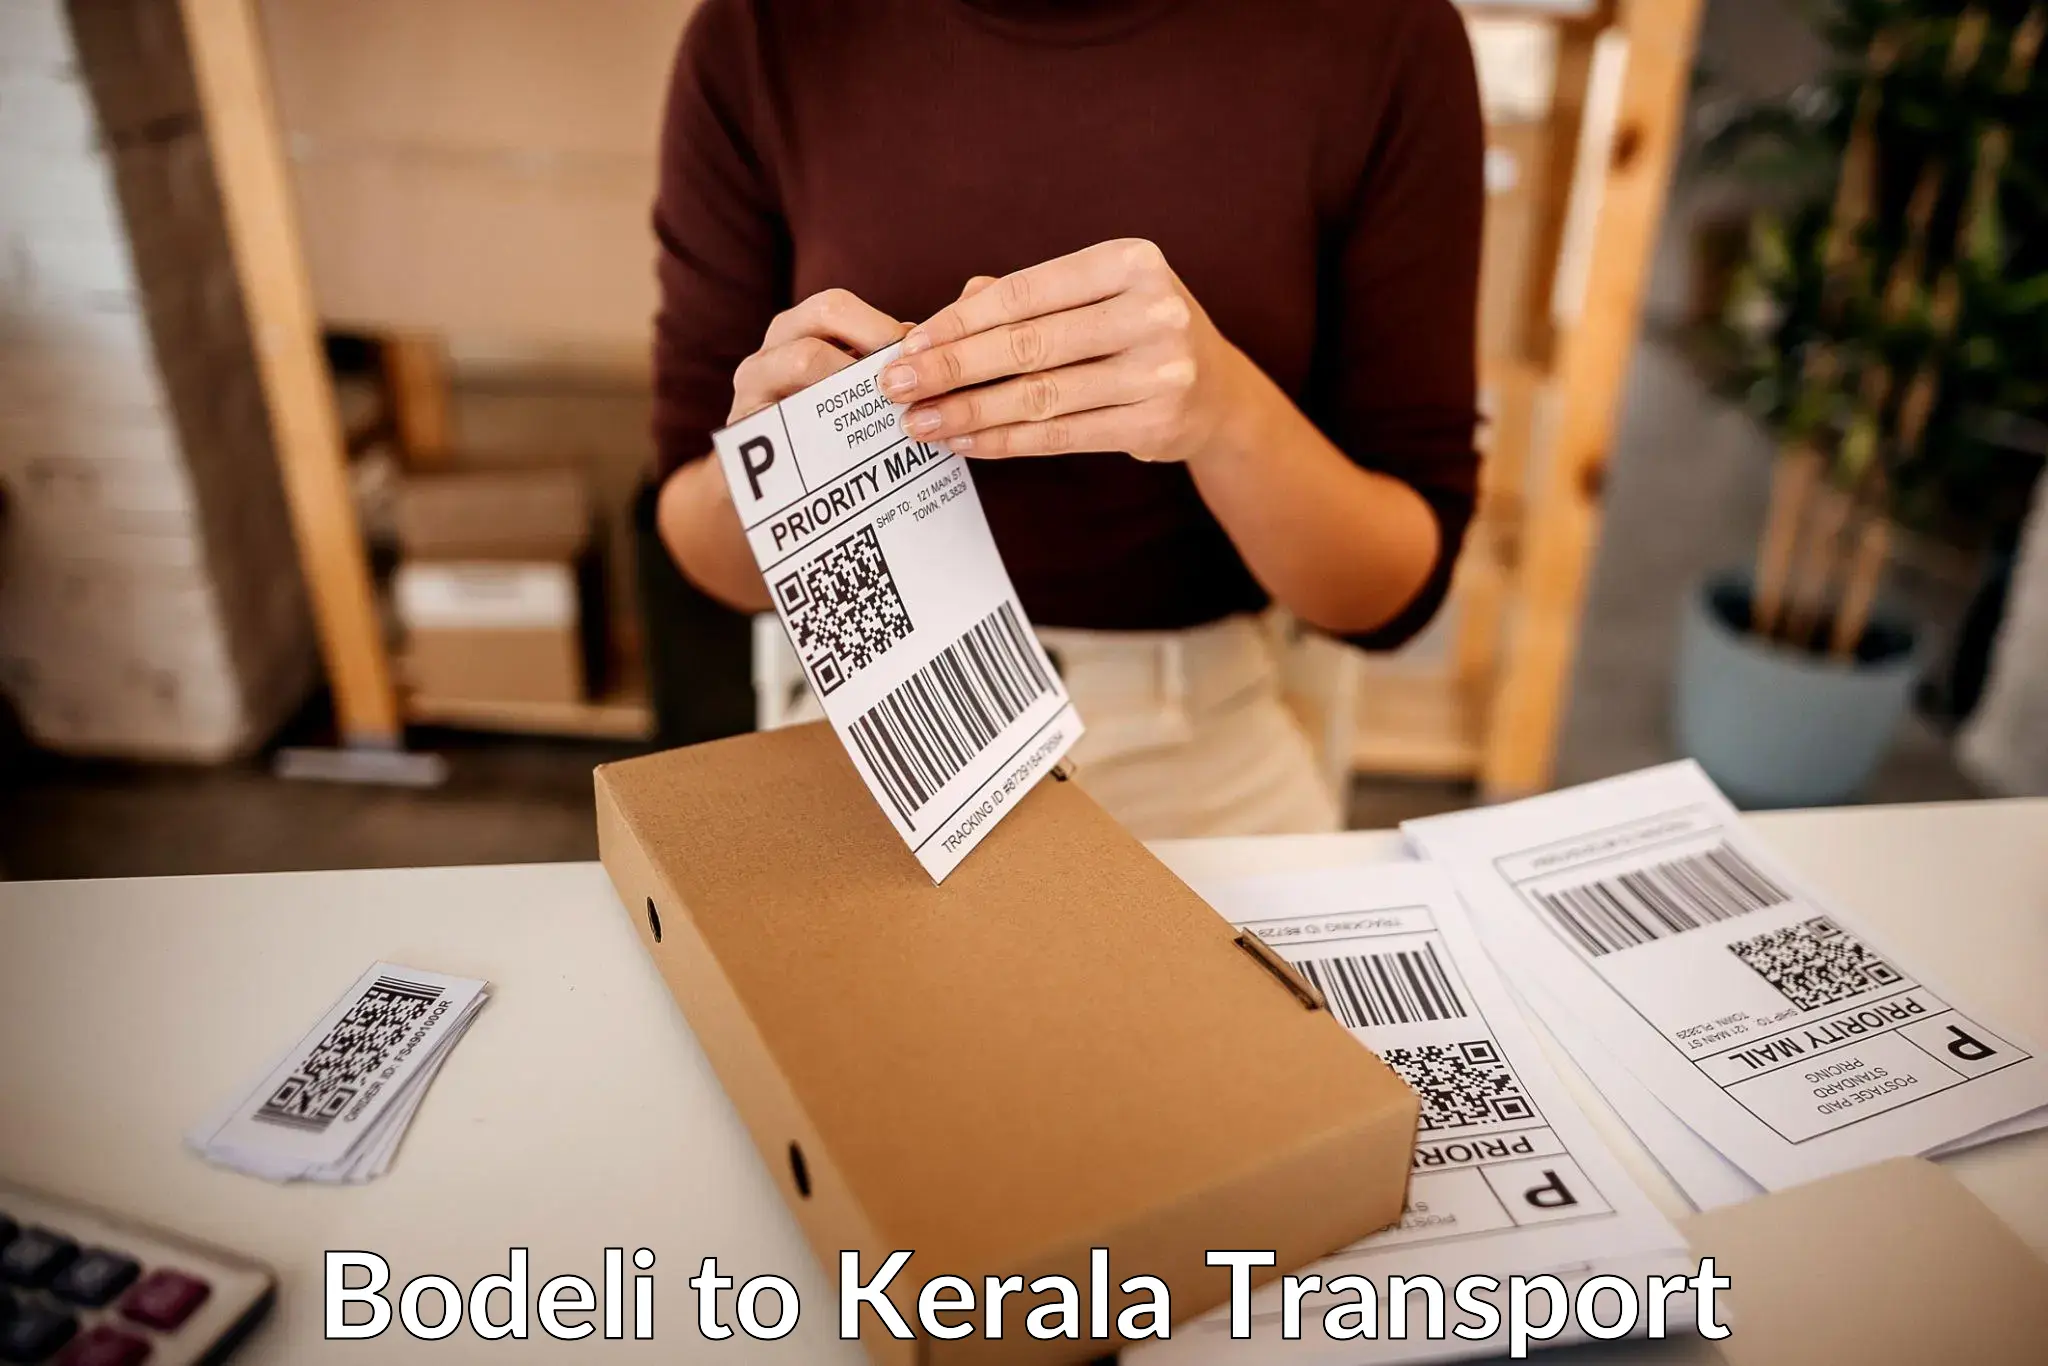 Express transport services Bodeli to Kanjirapally